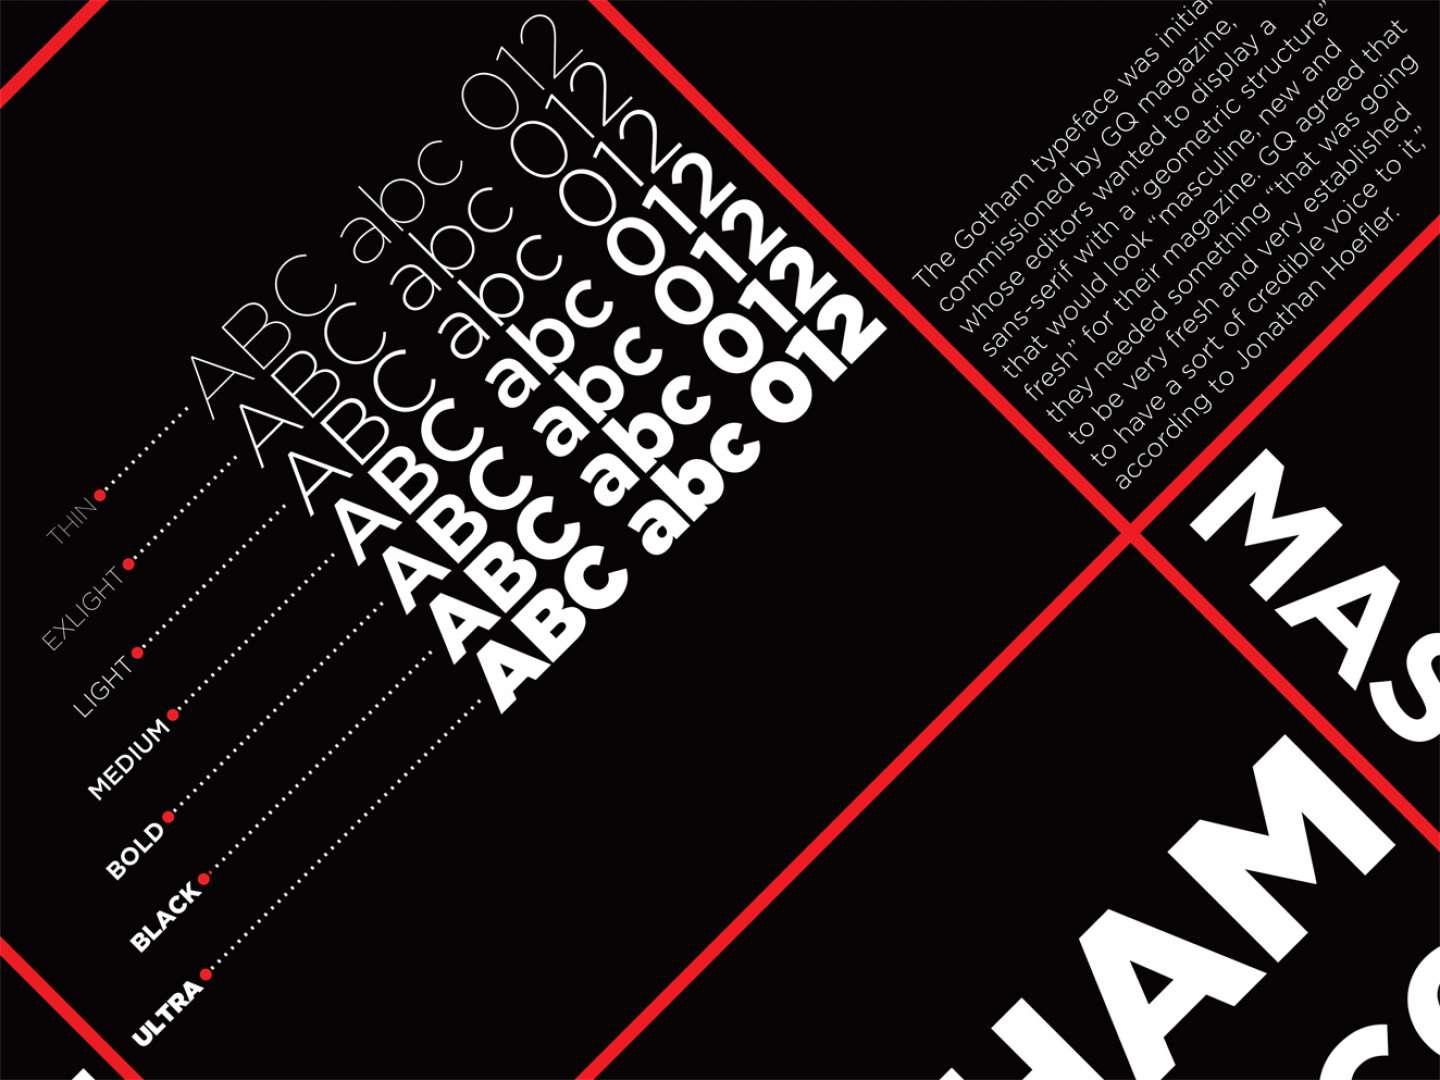 Gotham Typeface Speciment Poster